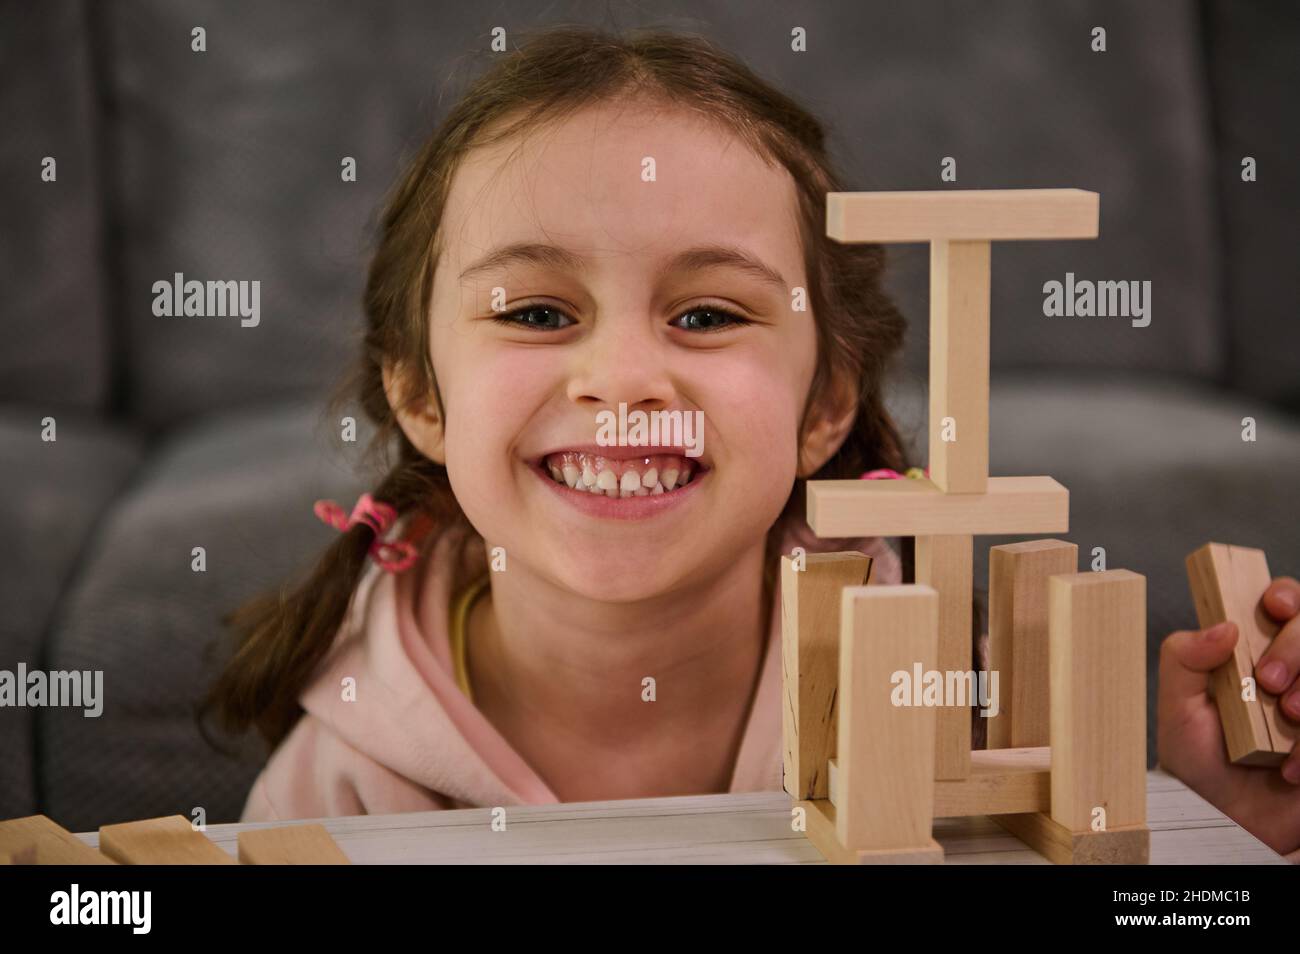 Portrait en gros plan d'une belle adorable petite fille souriant, souriant, regardant l'appareil photo, appréciant le jeu de société éducatif, construisant une structure en bois Banque D'Images